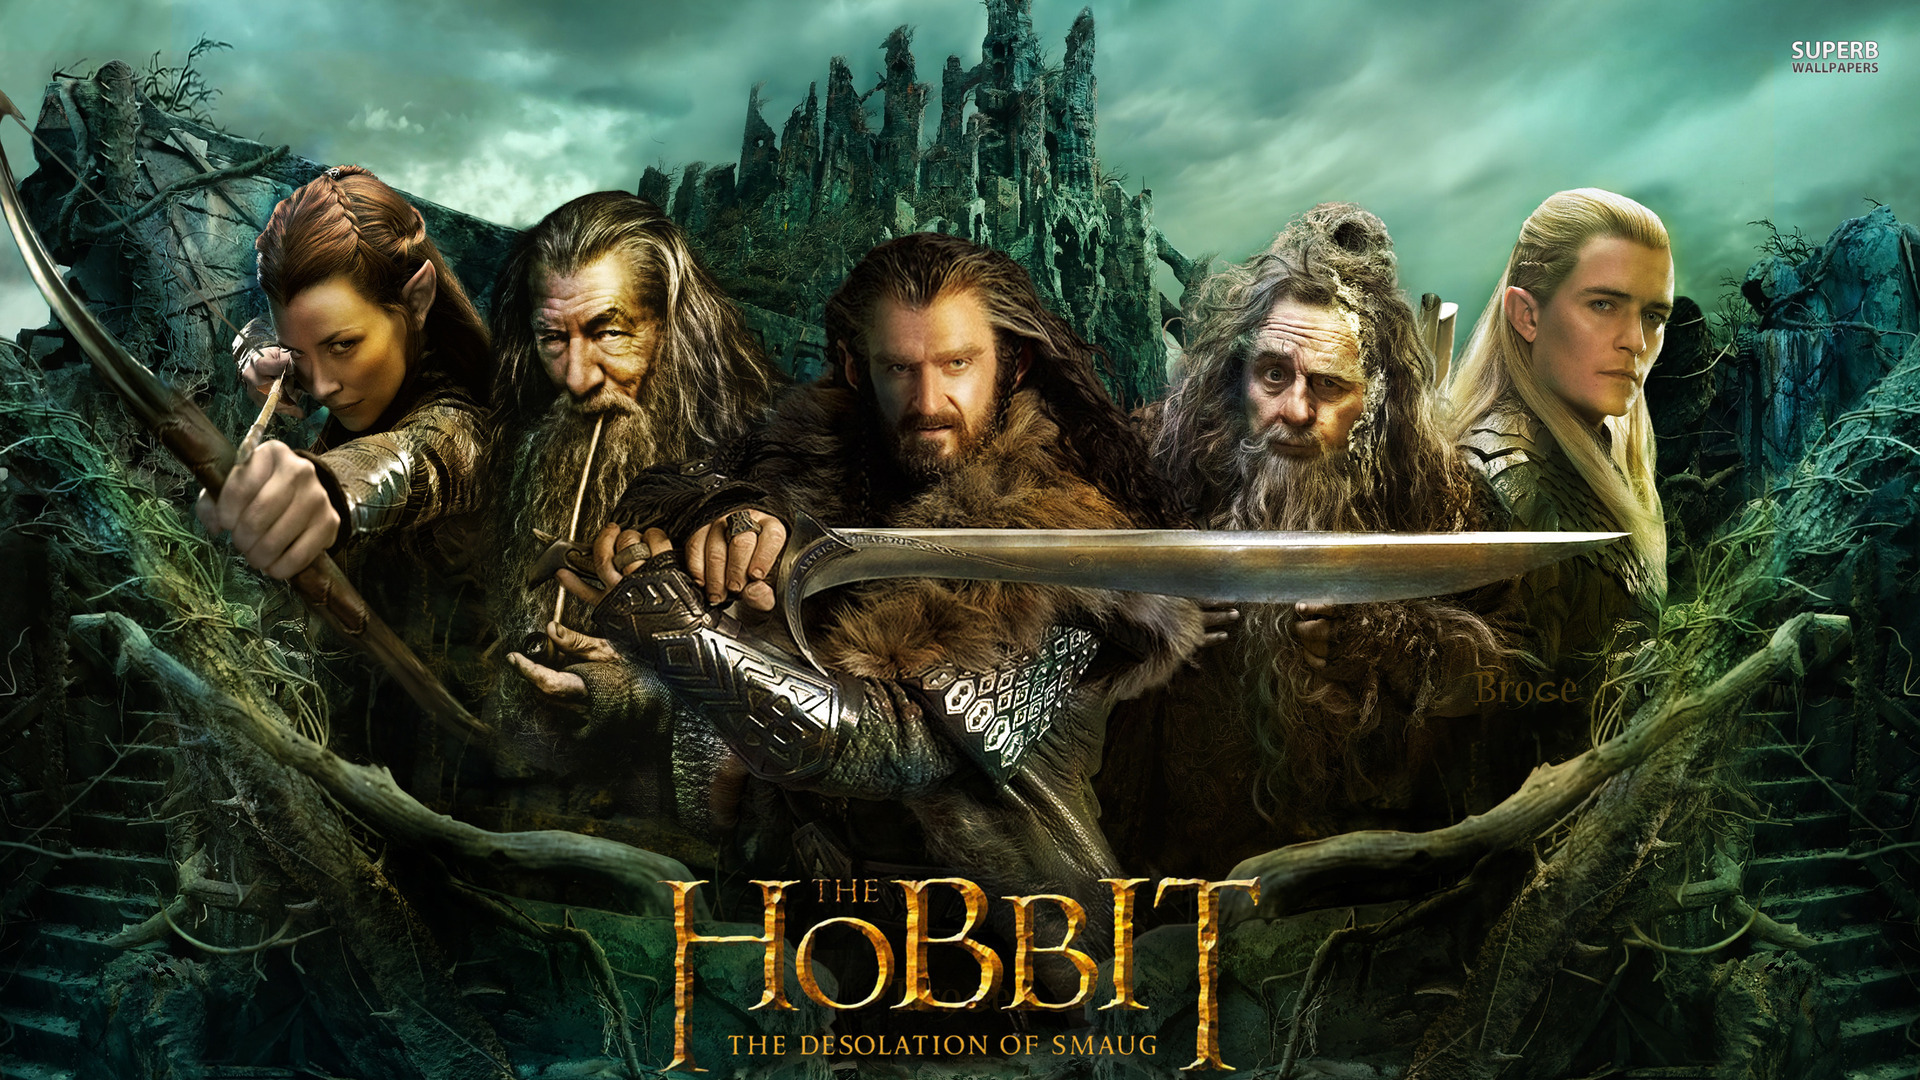 19-فیلم هابیت: ویرانی اسماگ 2013 The Hobbit The Desolation of Smaug